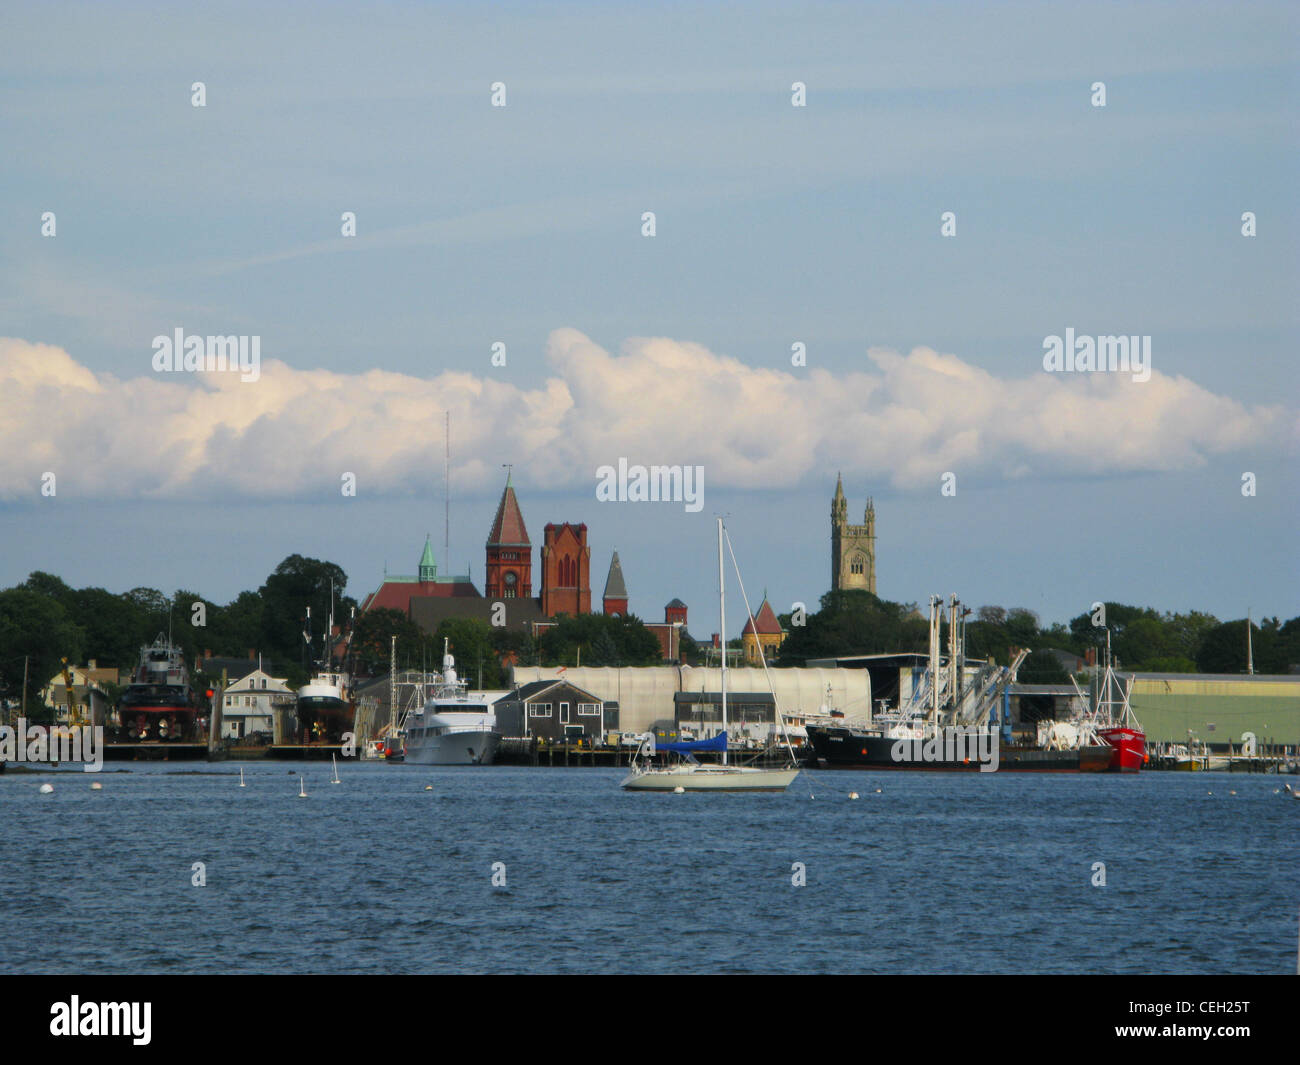 Puertos marítimos de inglaterra fotografías e imágenes de alta resolución -  Página 3 - Alamy